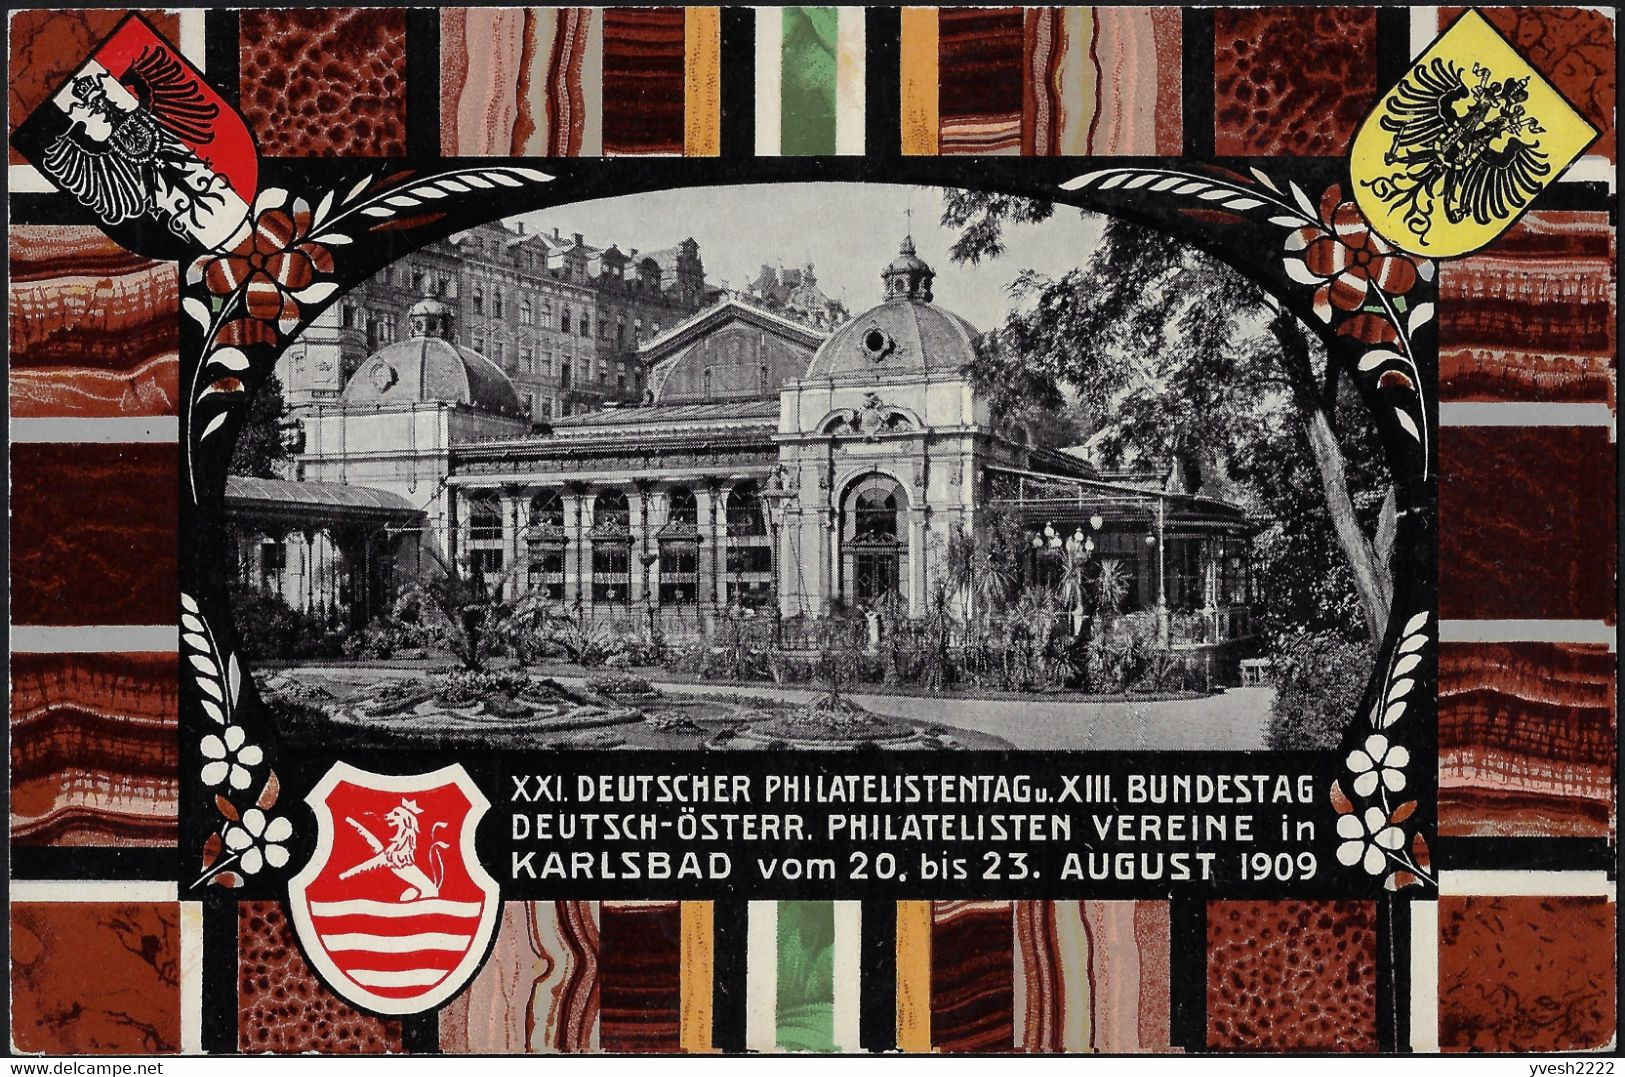 Autriche-Hongrie 1909. 3 entiers timbrés sur commande. Karlovy Vary, Karlsbad, thermalisme, art nouveau, sel